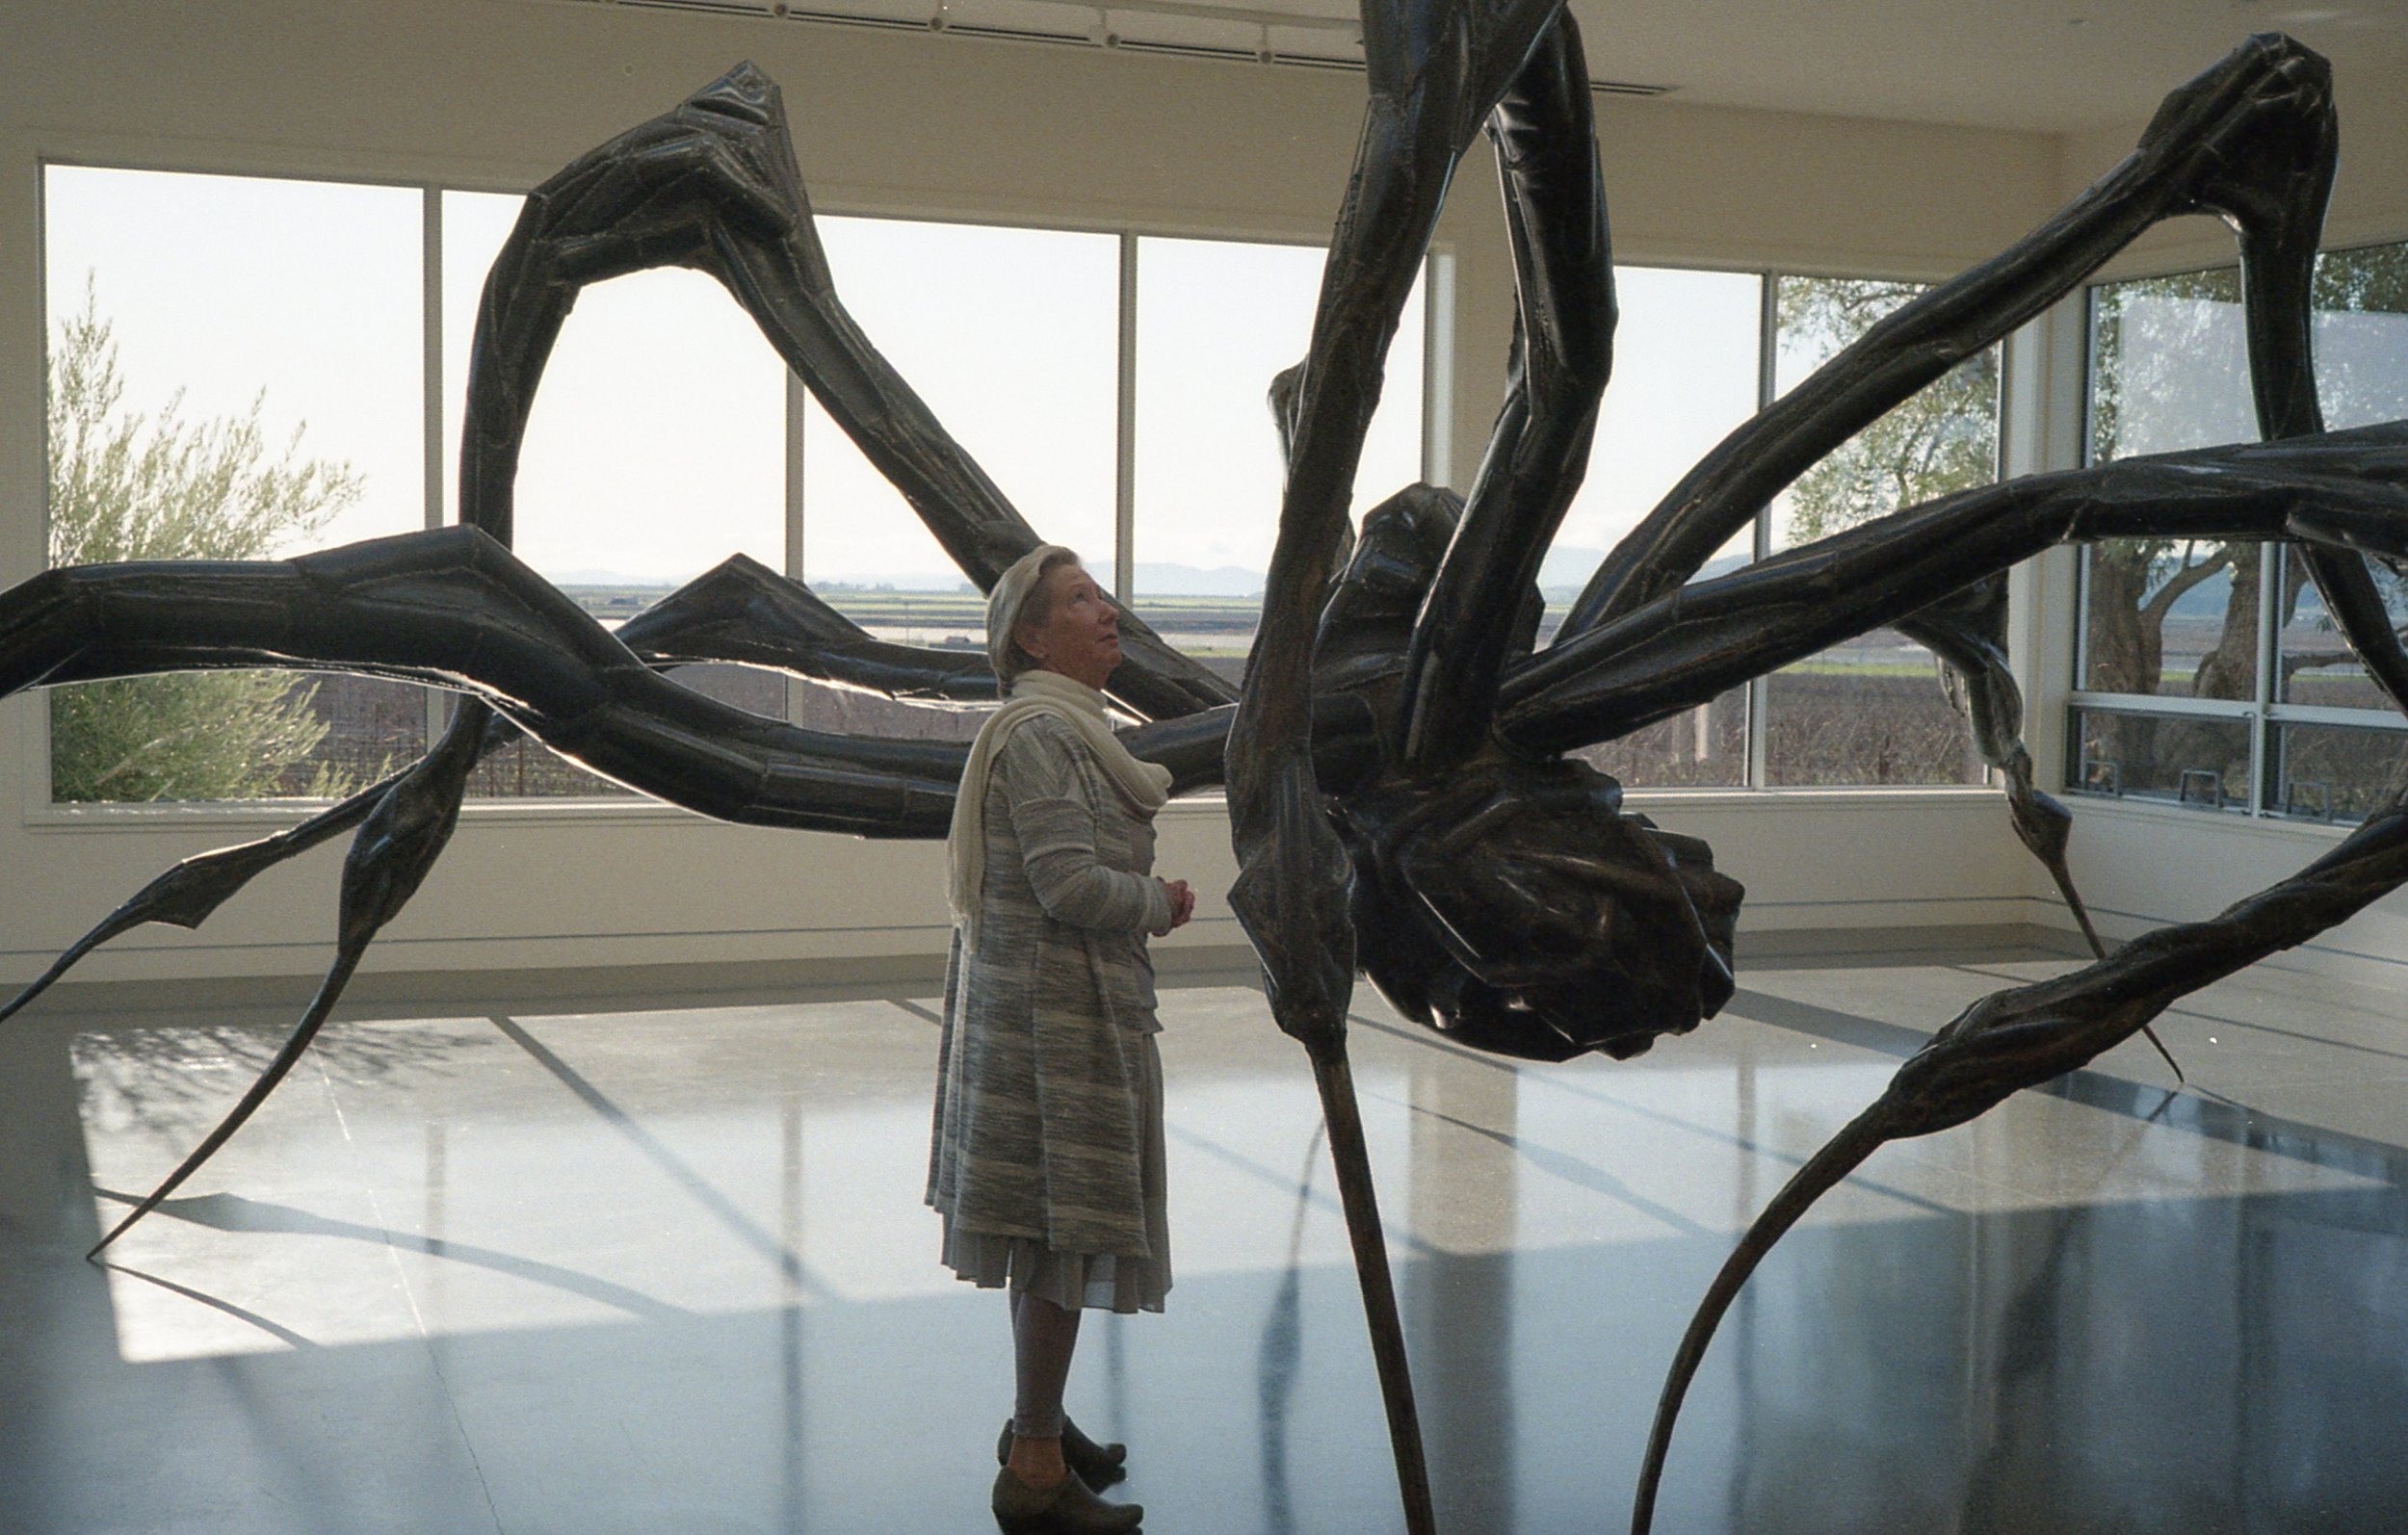 Spider sculpture lady.jpg